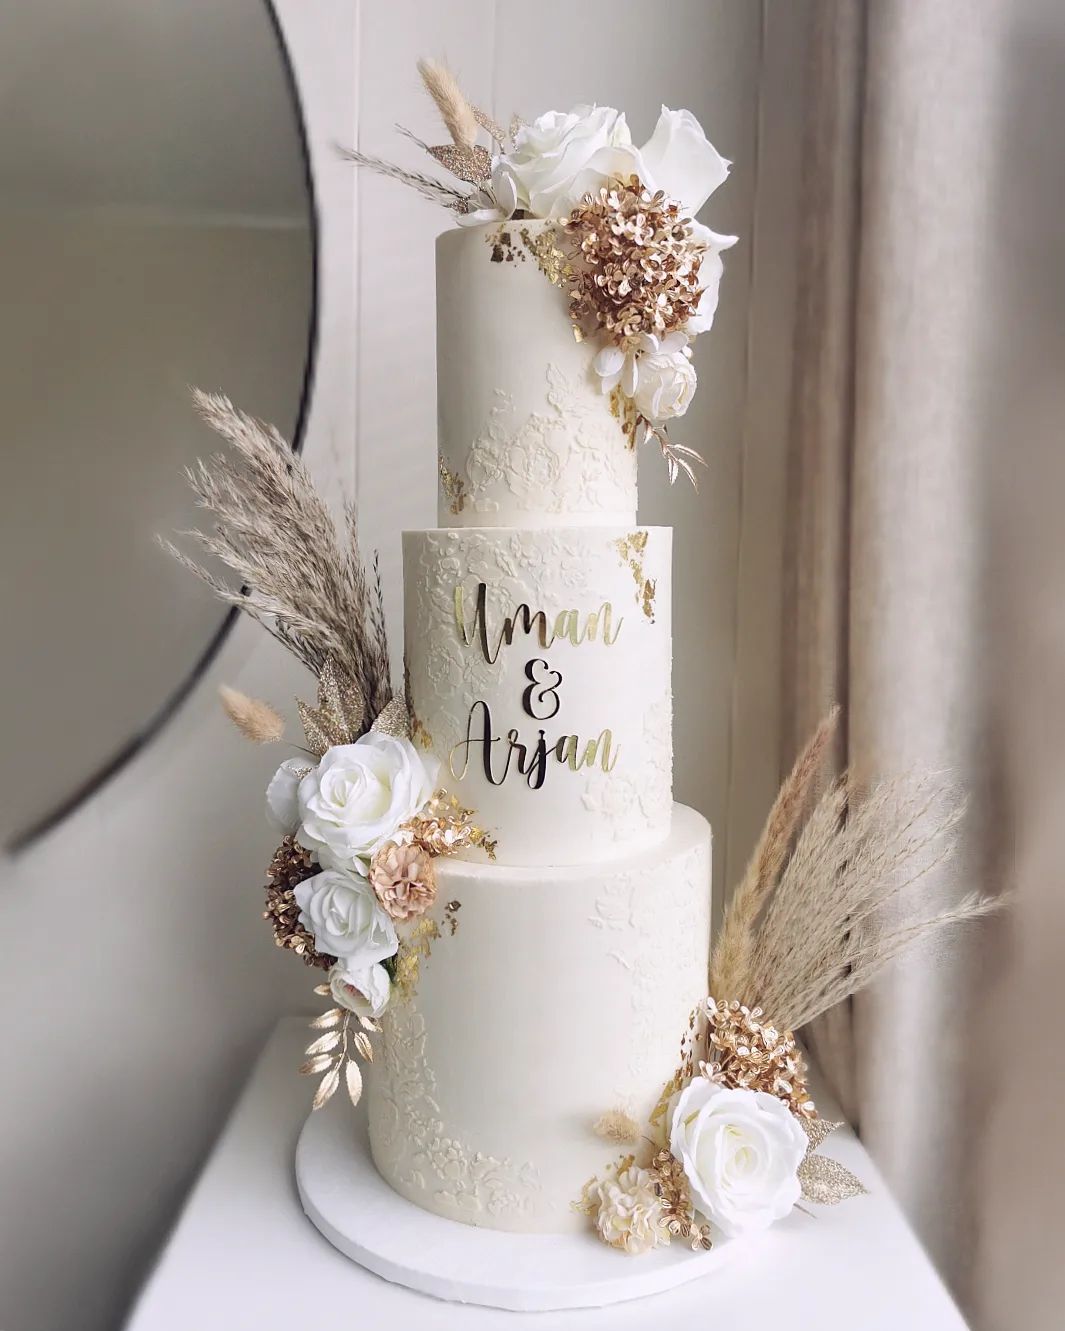 3 tier bohemian white and gold wedding cake via littlemissfattycakes